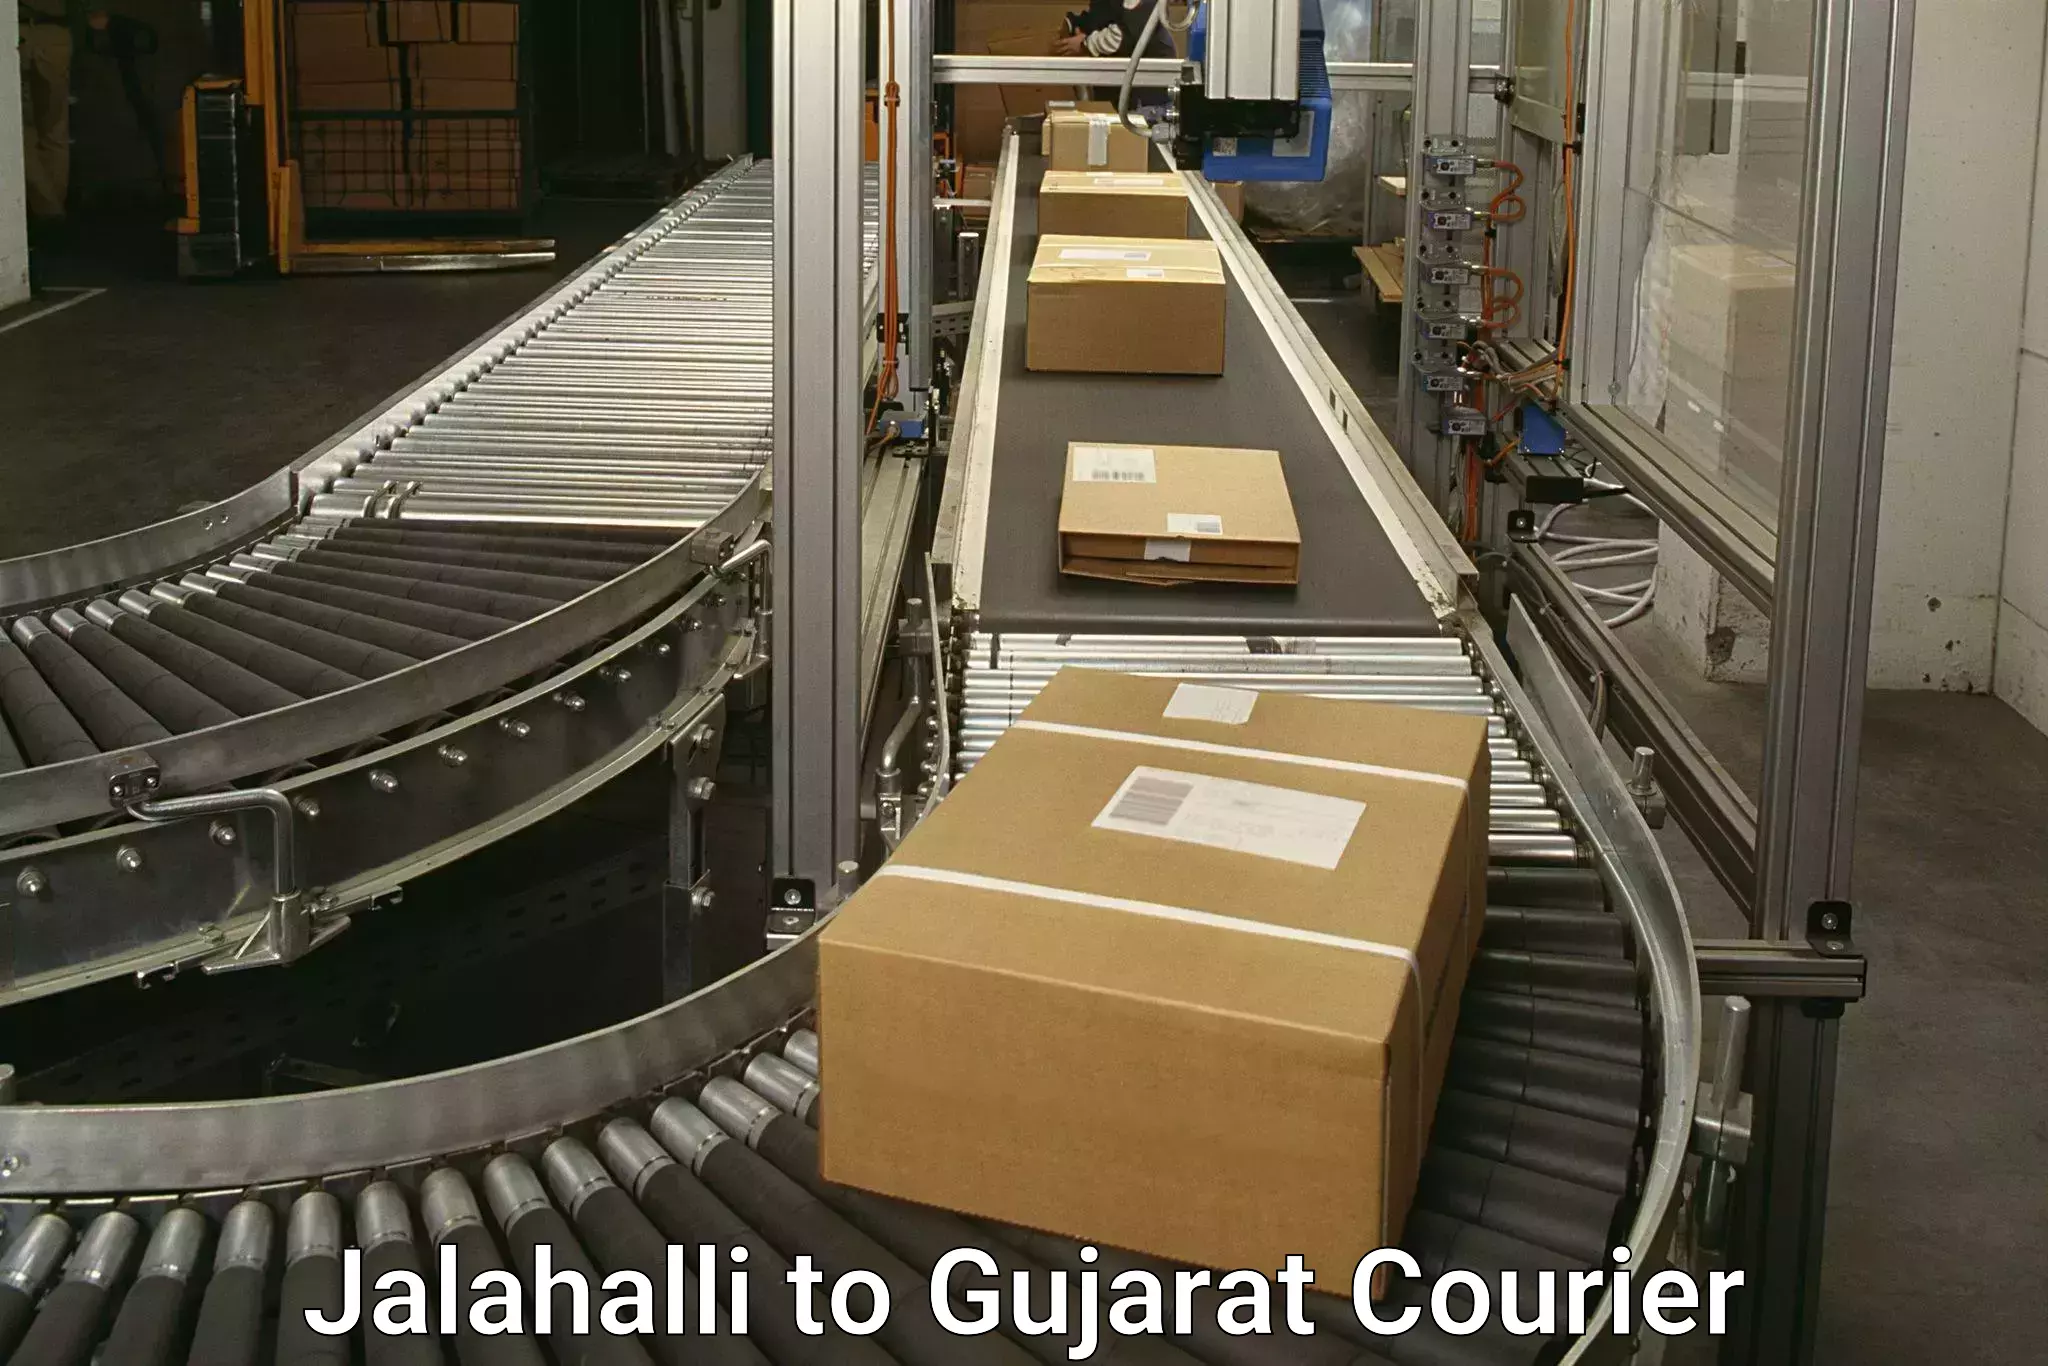 Express logistics service Jalahalli to Ahmedabad